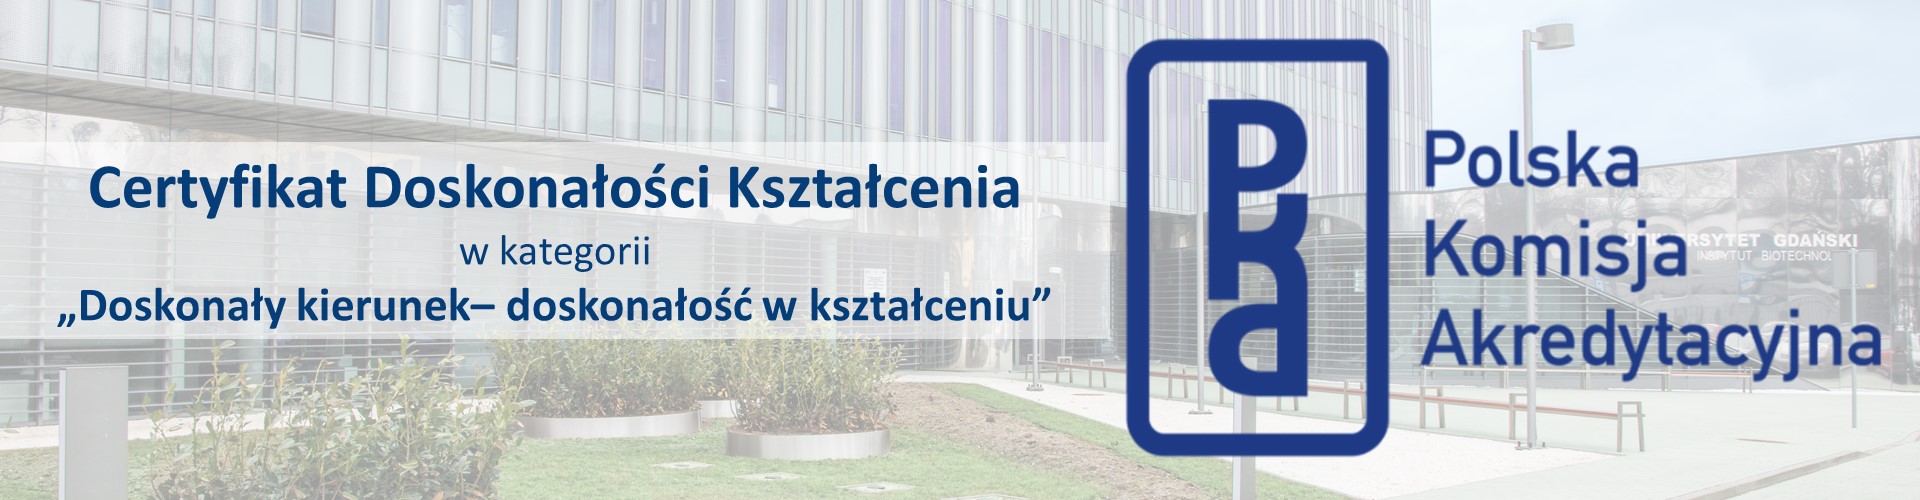 Kierunek Biotechnologia na MWB wyróżniony jako jedyny w Polsce